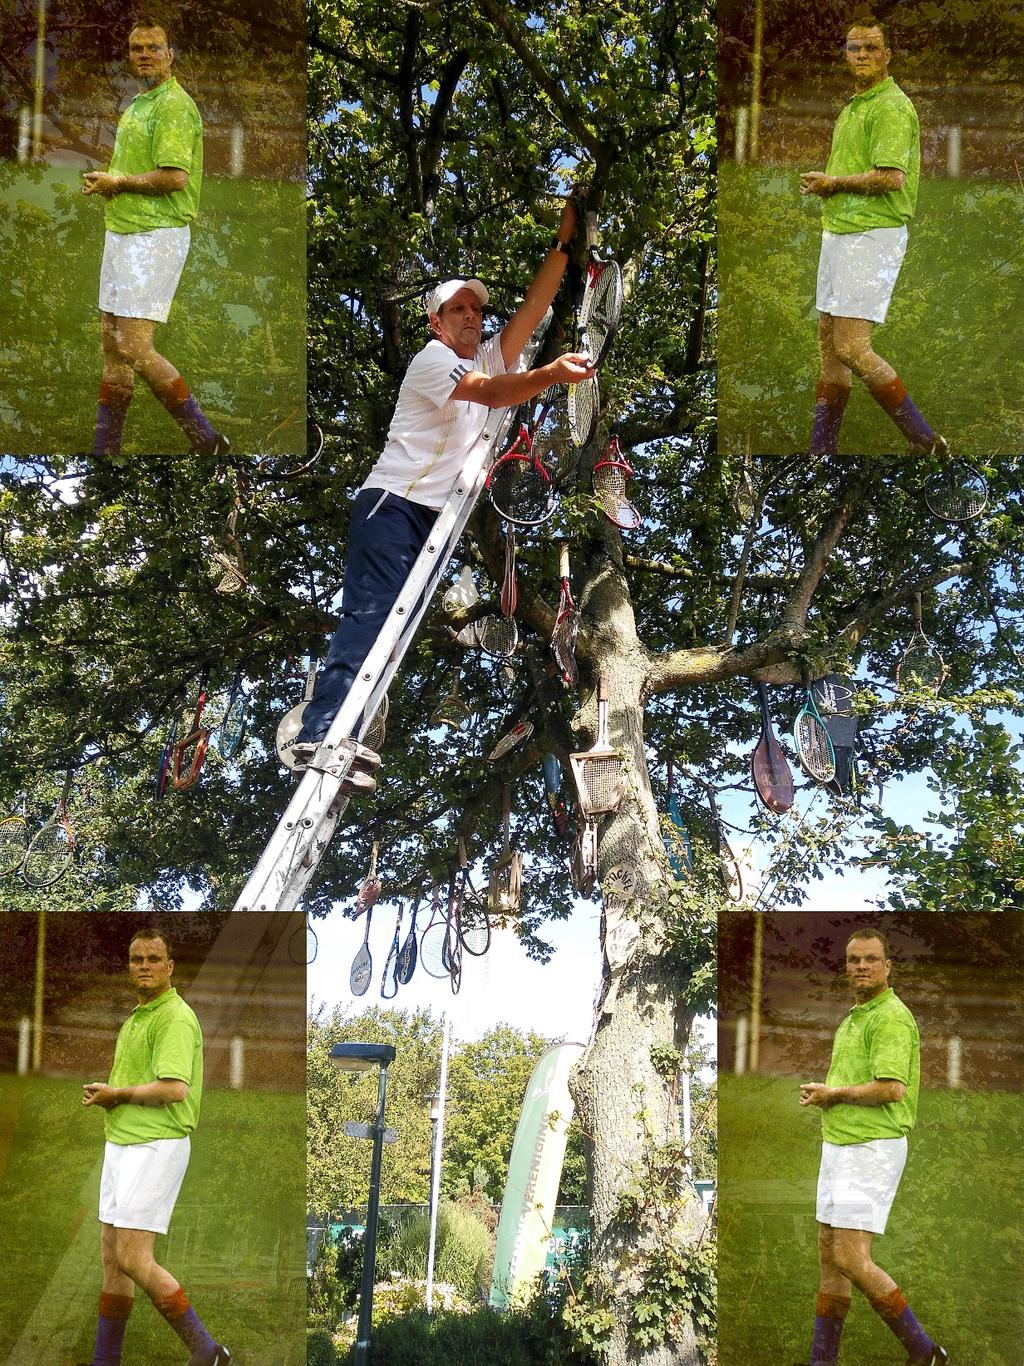 Racketboom Met gevaar voor eigen leven hebben wij Richard en Nico weer 75 tennisrackets opgehangen in de bekende racket boom.